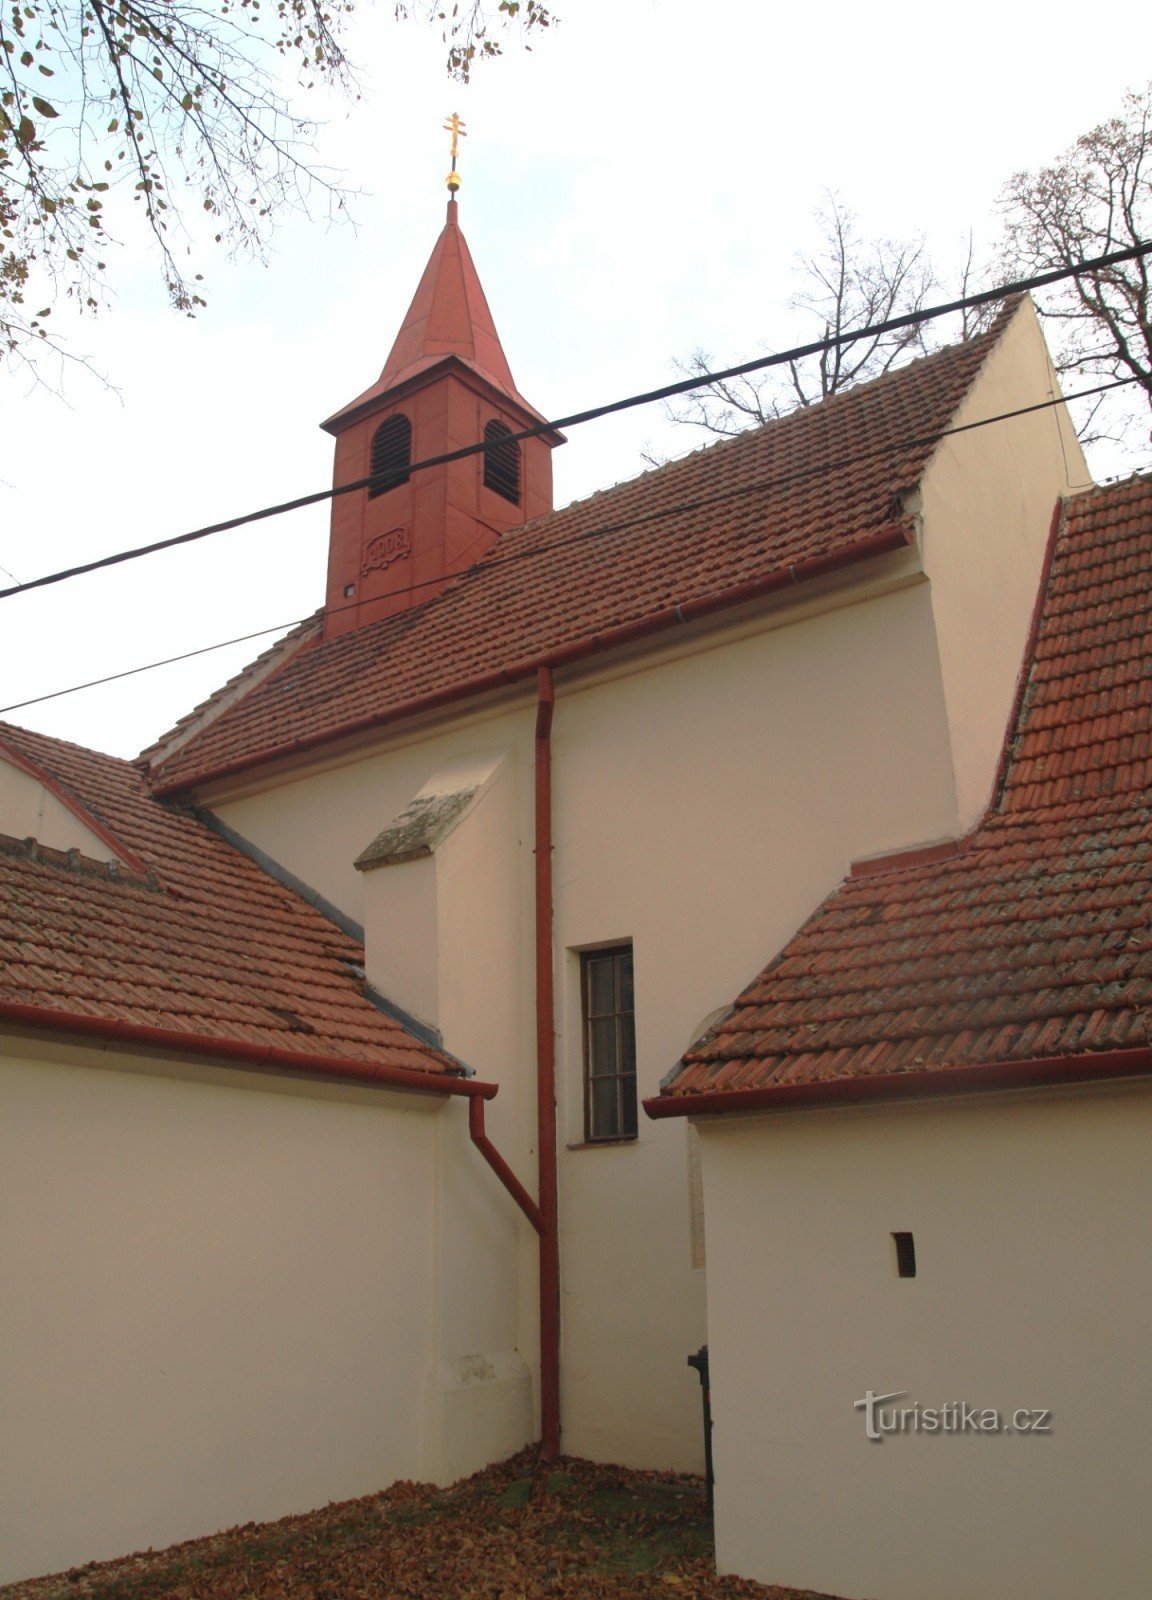 Nebovidy - Pyhän kirkko Kriisi